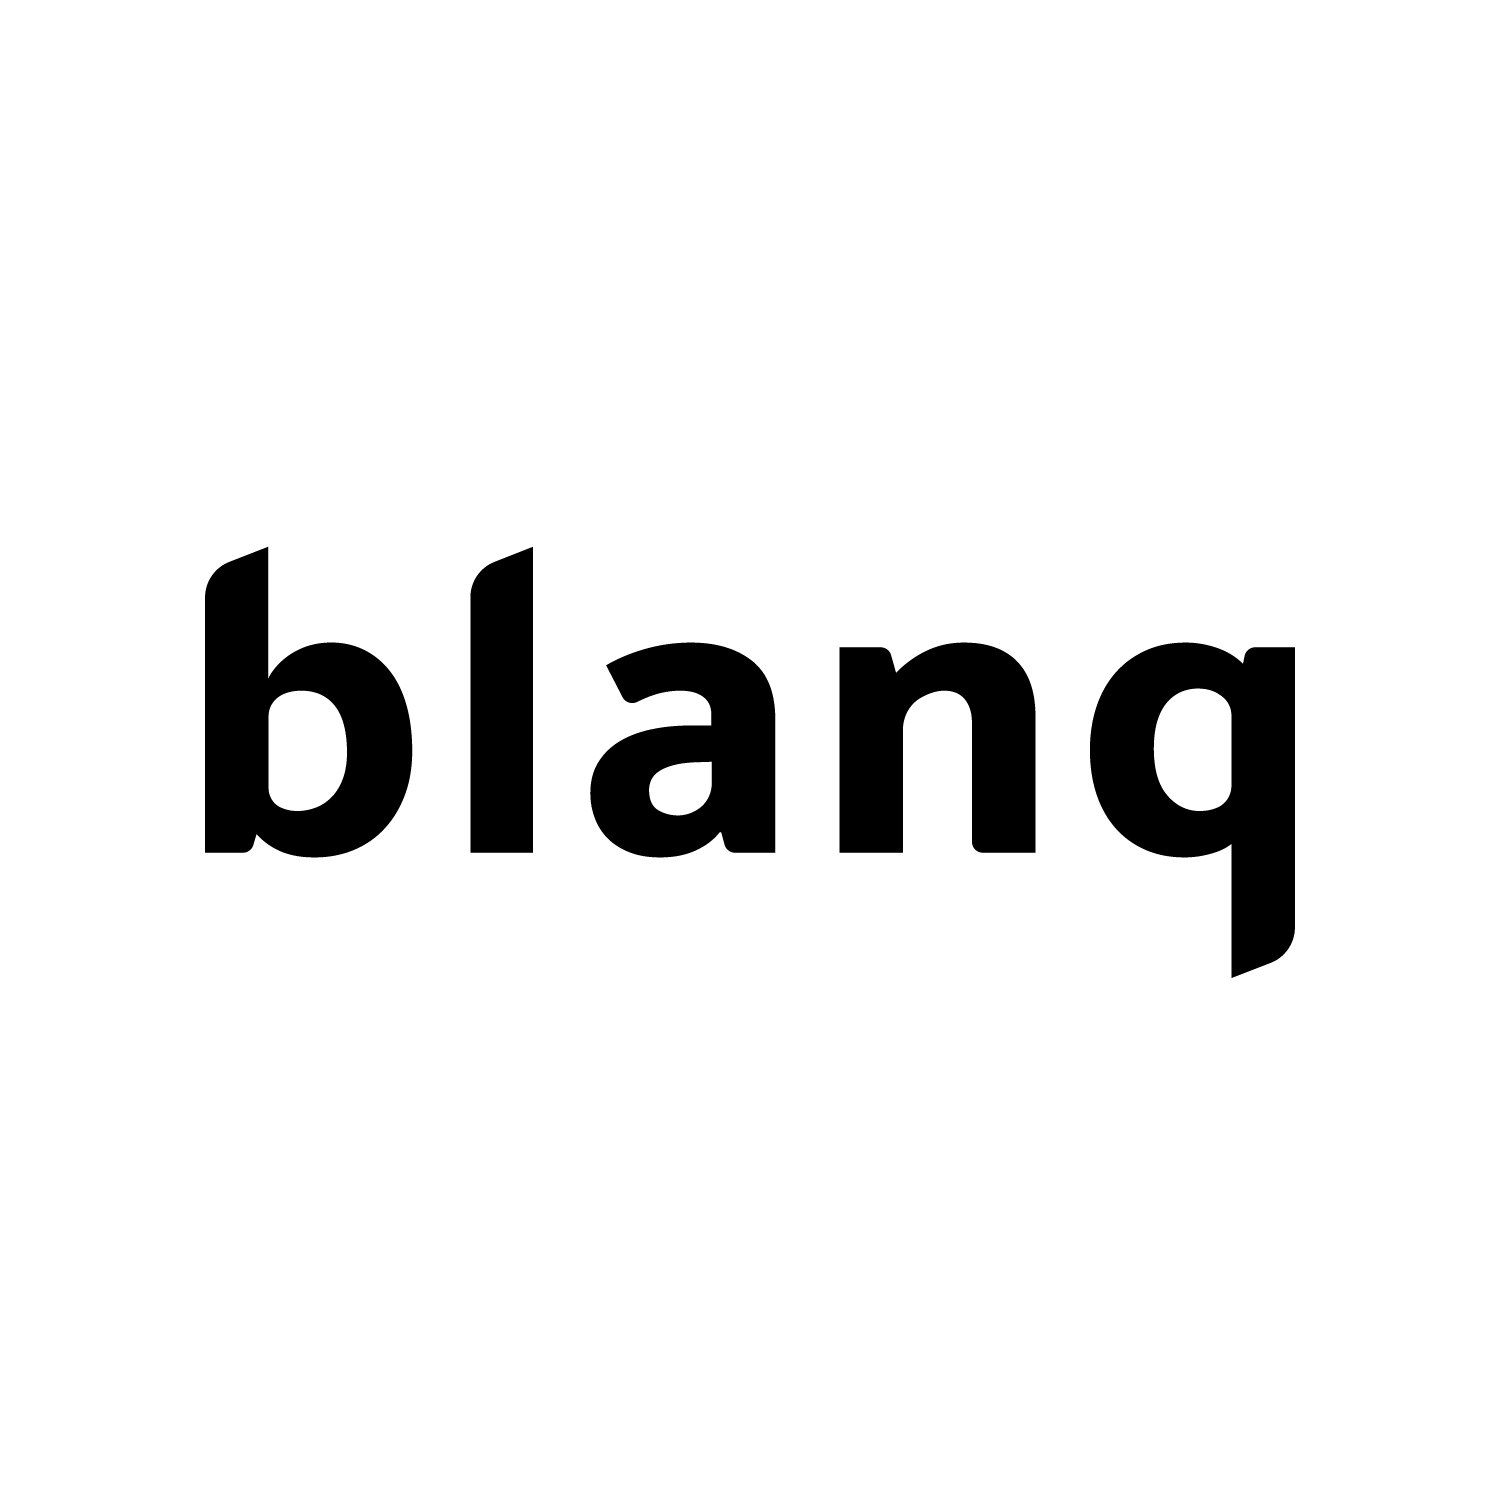 blanq - Individuelle Websites, Apps & Branding